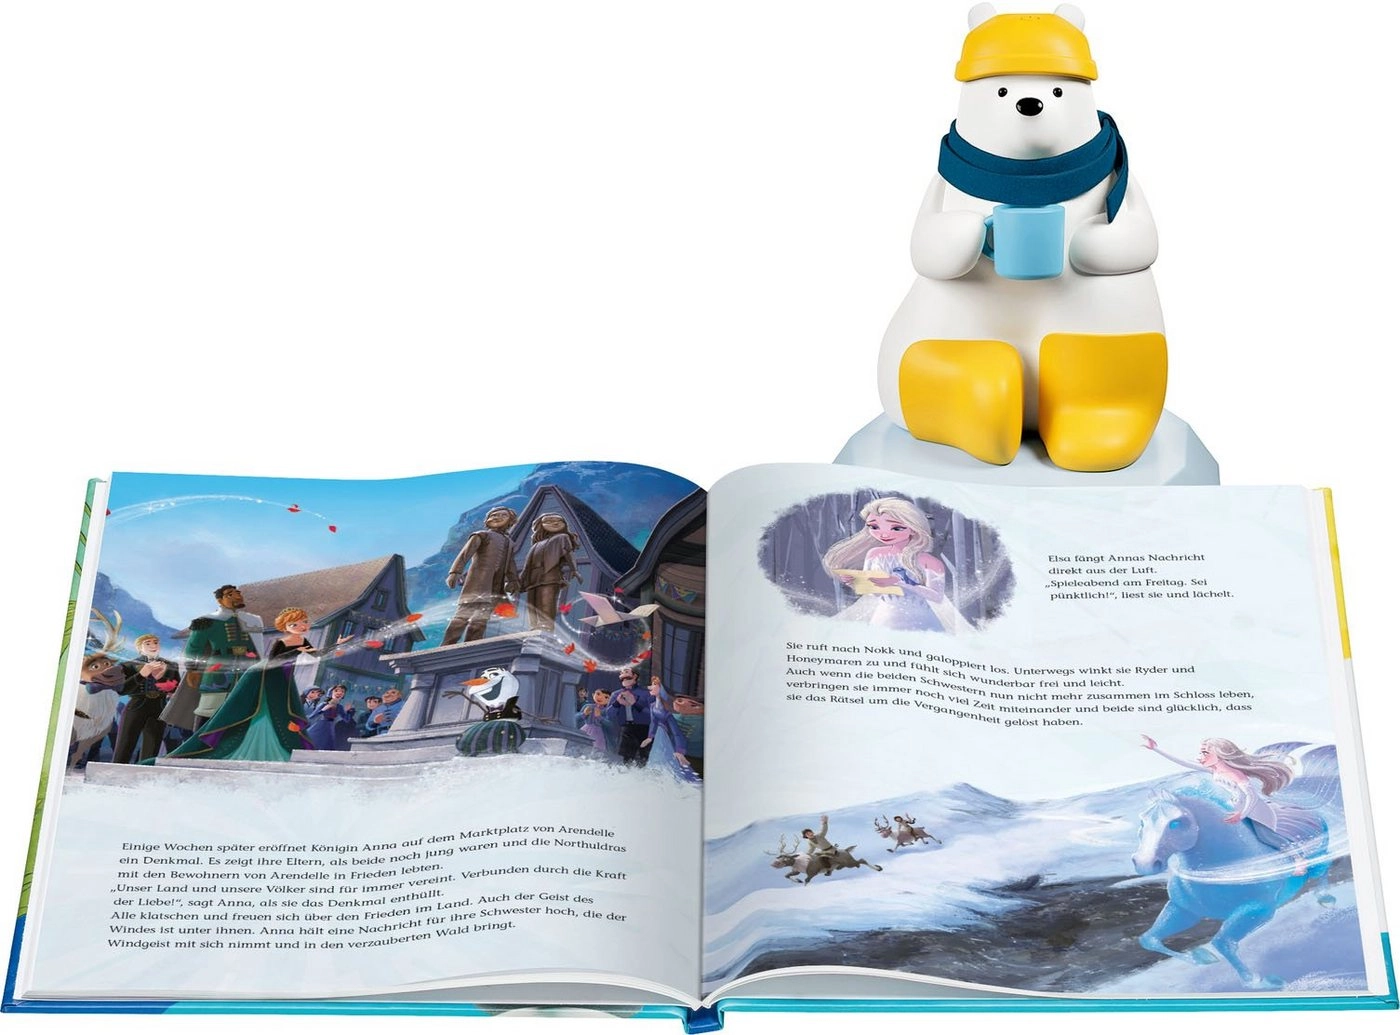 SAMi Buch Disney Die Eiskönigin 2